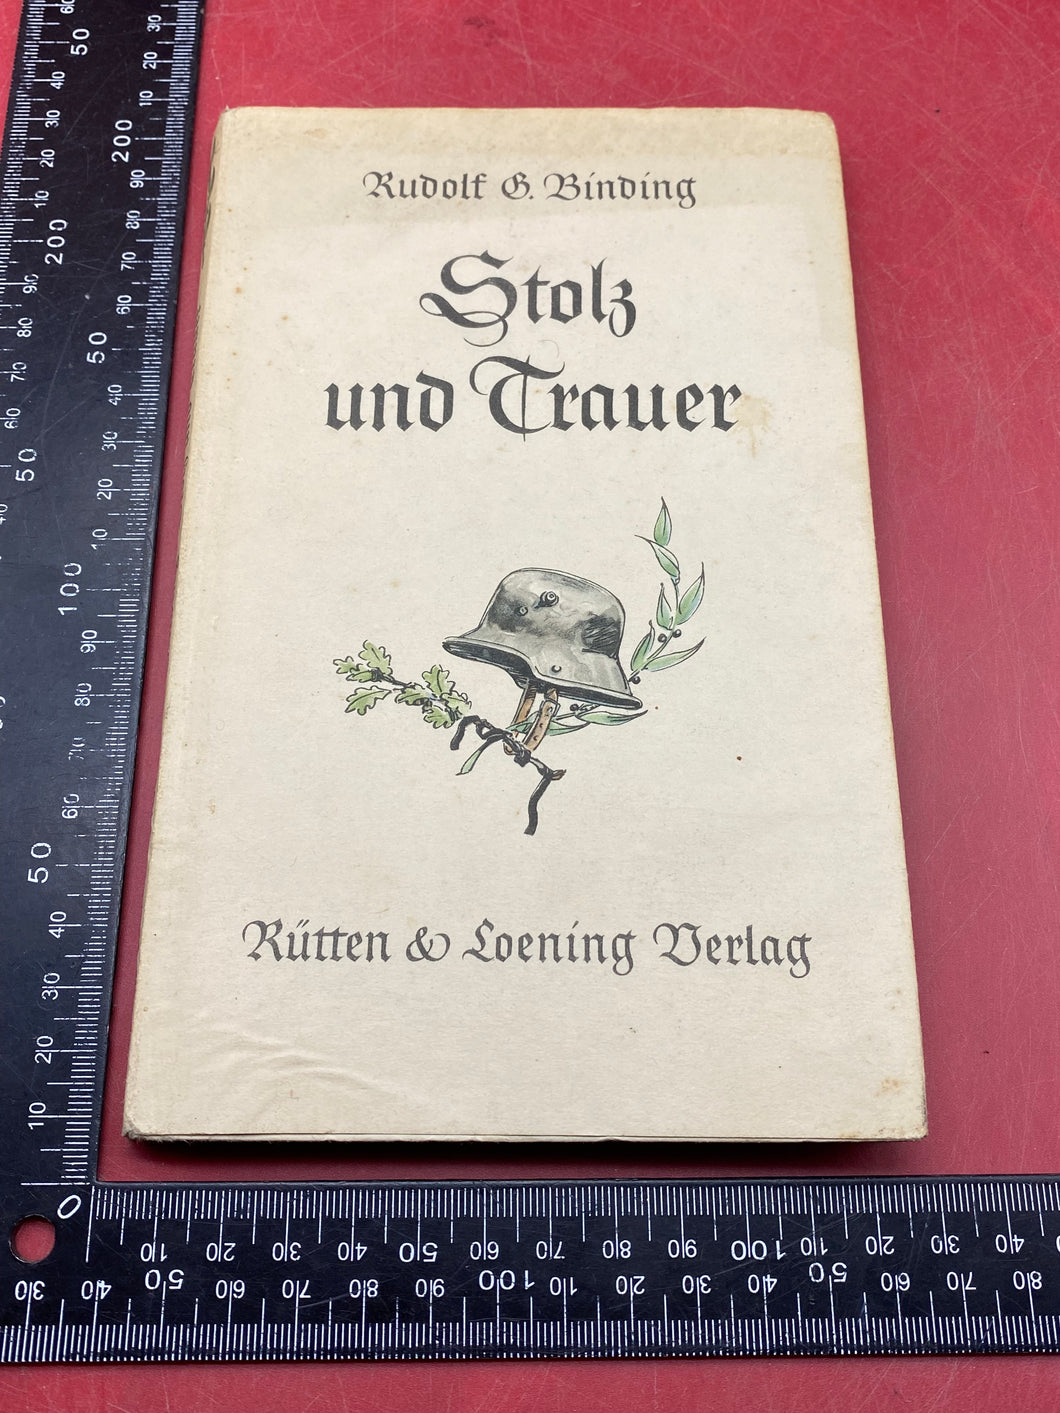 Original 1940 Dated WW2 German Stolz under Trauer Book